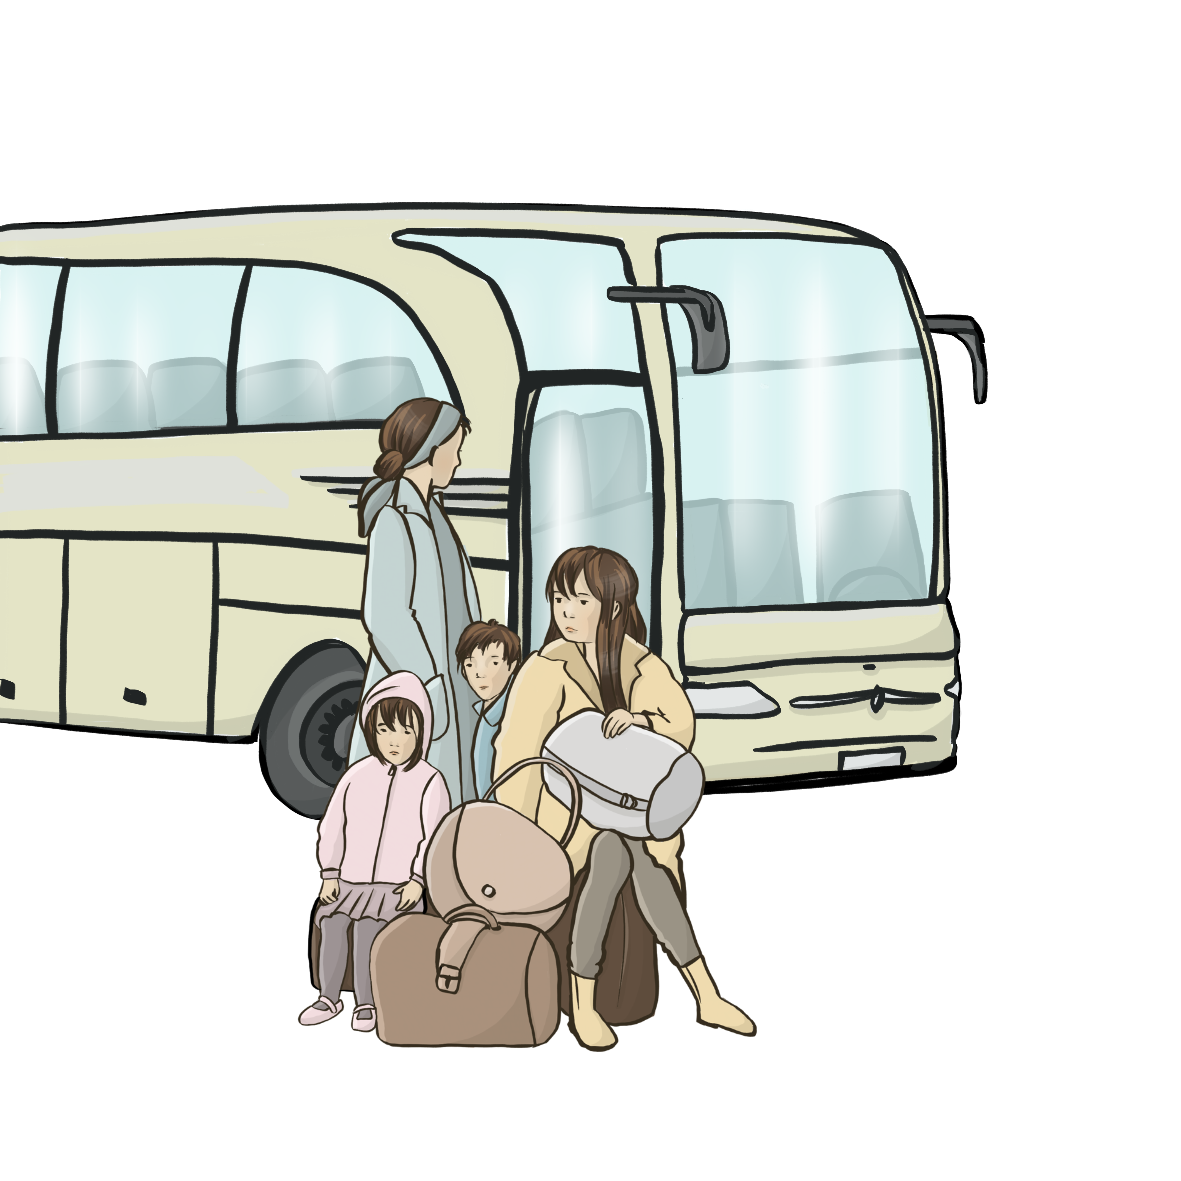 Eine Flüchtlingsfamilie steht vor einem Bus: Eine Mutter mit drei Kindern und Gepäck. Nutzungsrecht gemäß Lizenzbestimmungen Inga Kramer